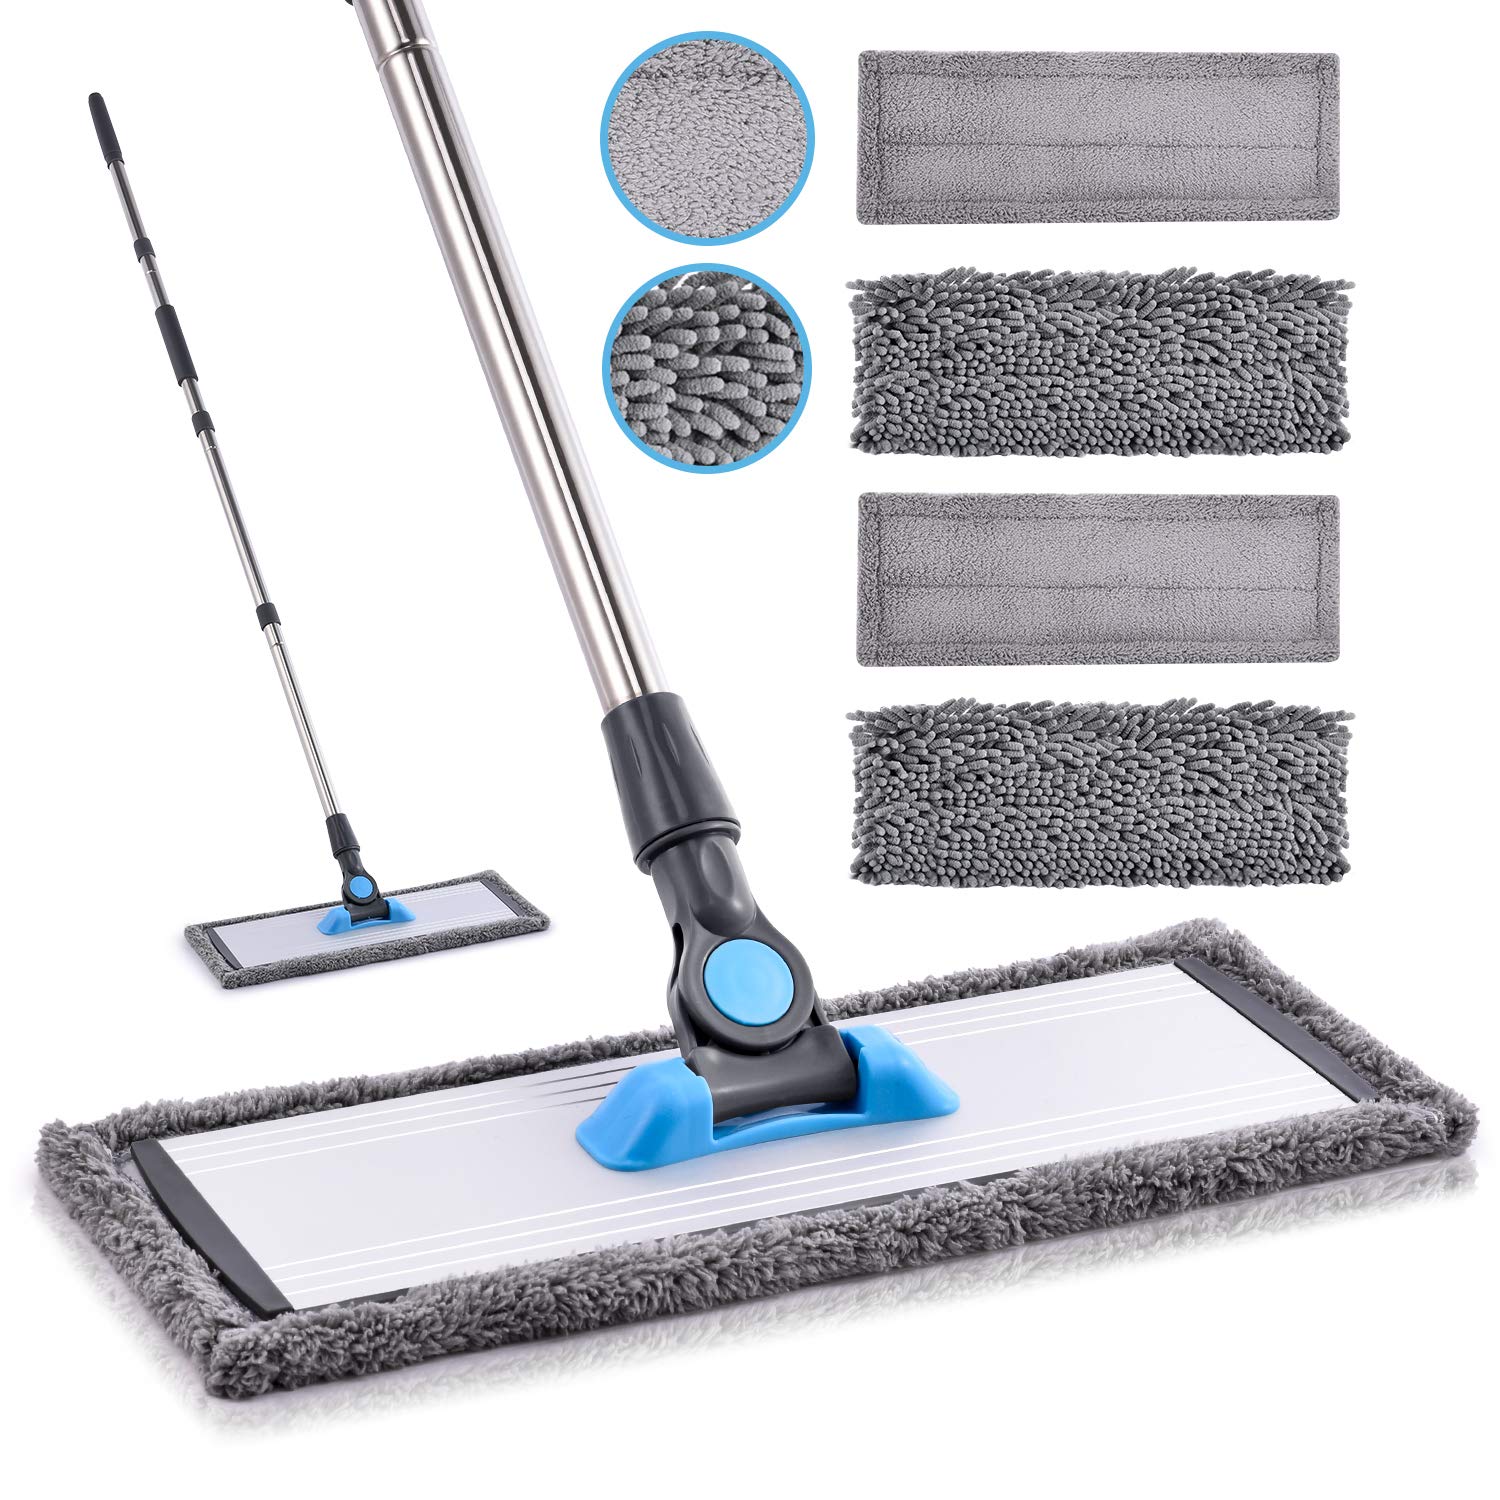 Microfiber Floor Hardwood Mop - MANGOTIME Dust Wet Mop with 4